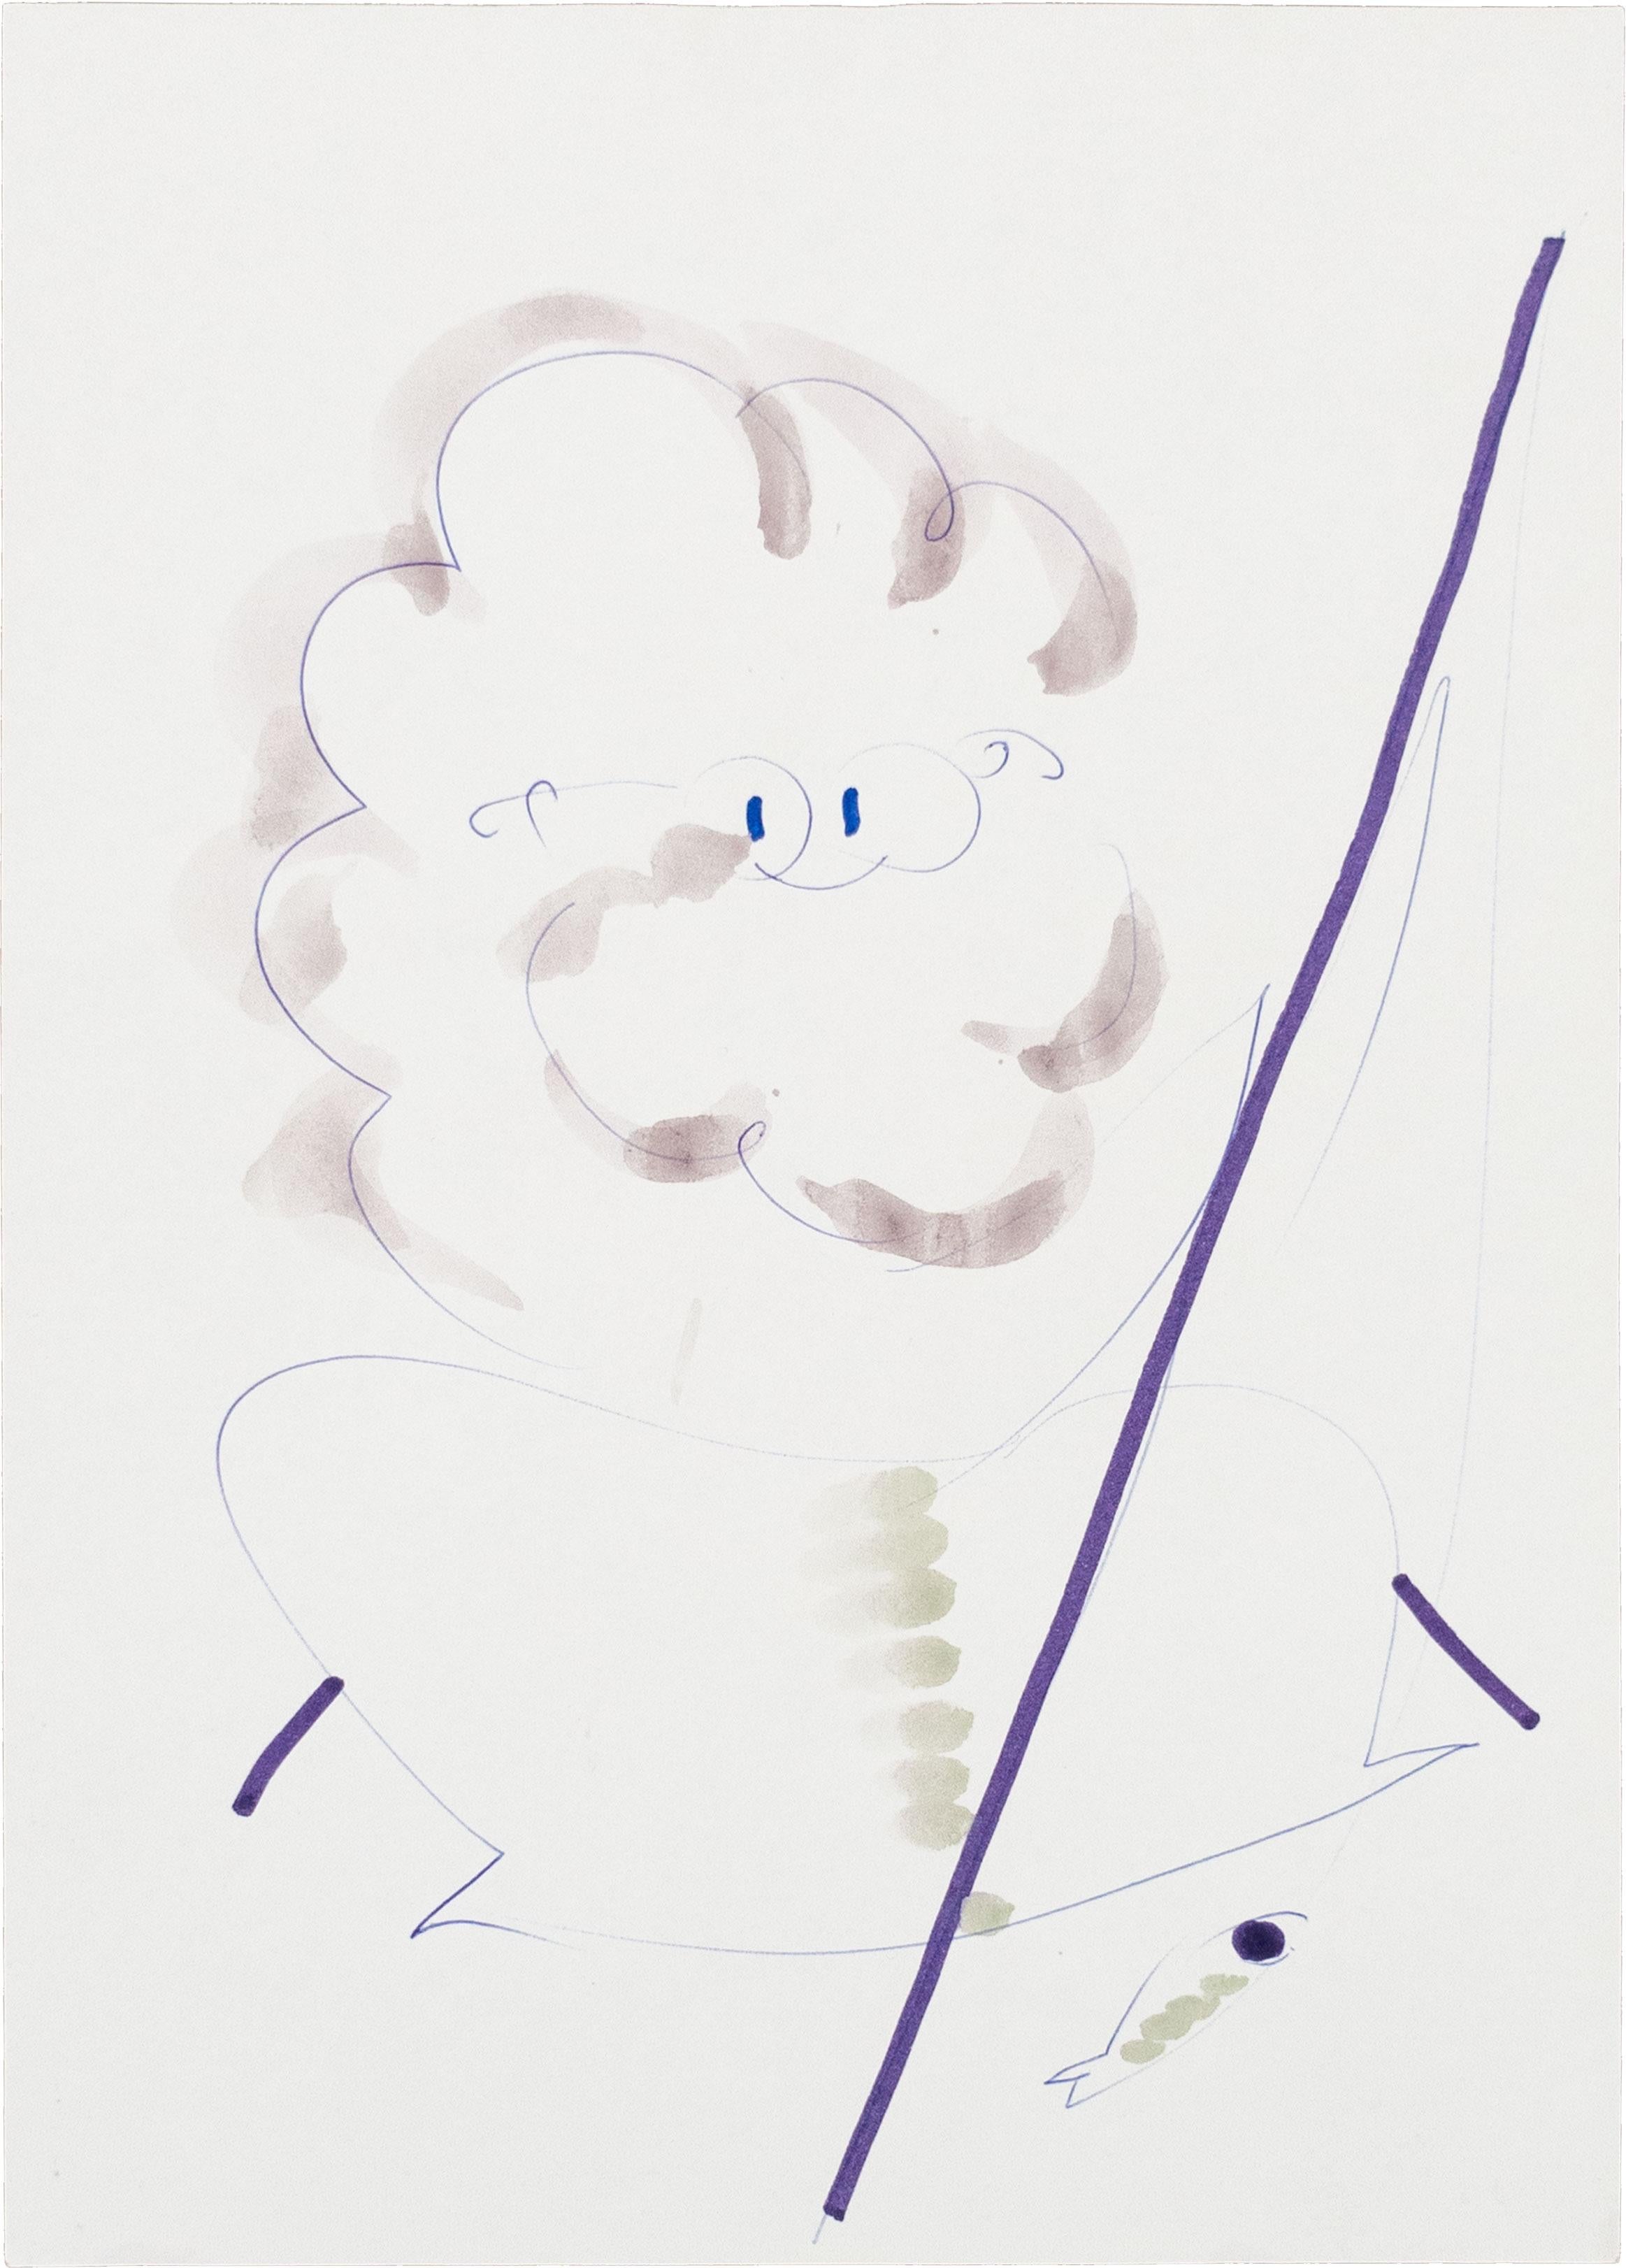 Senza Titolo, ca. 2000, Disegno su carta, Illustrazioni a penna, Acquerelli